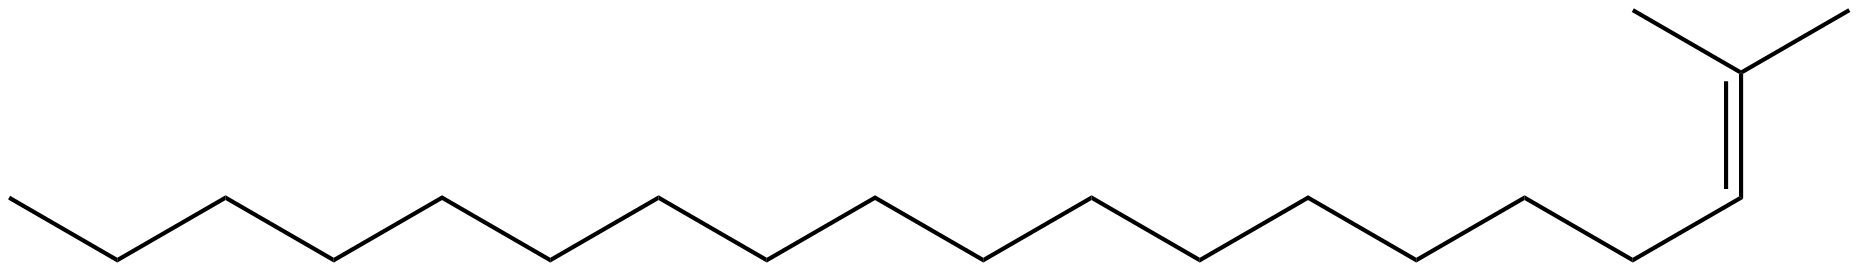 Image of 2-methyl-2-nonadecene